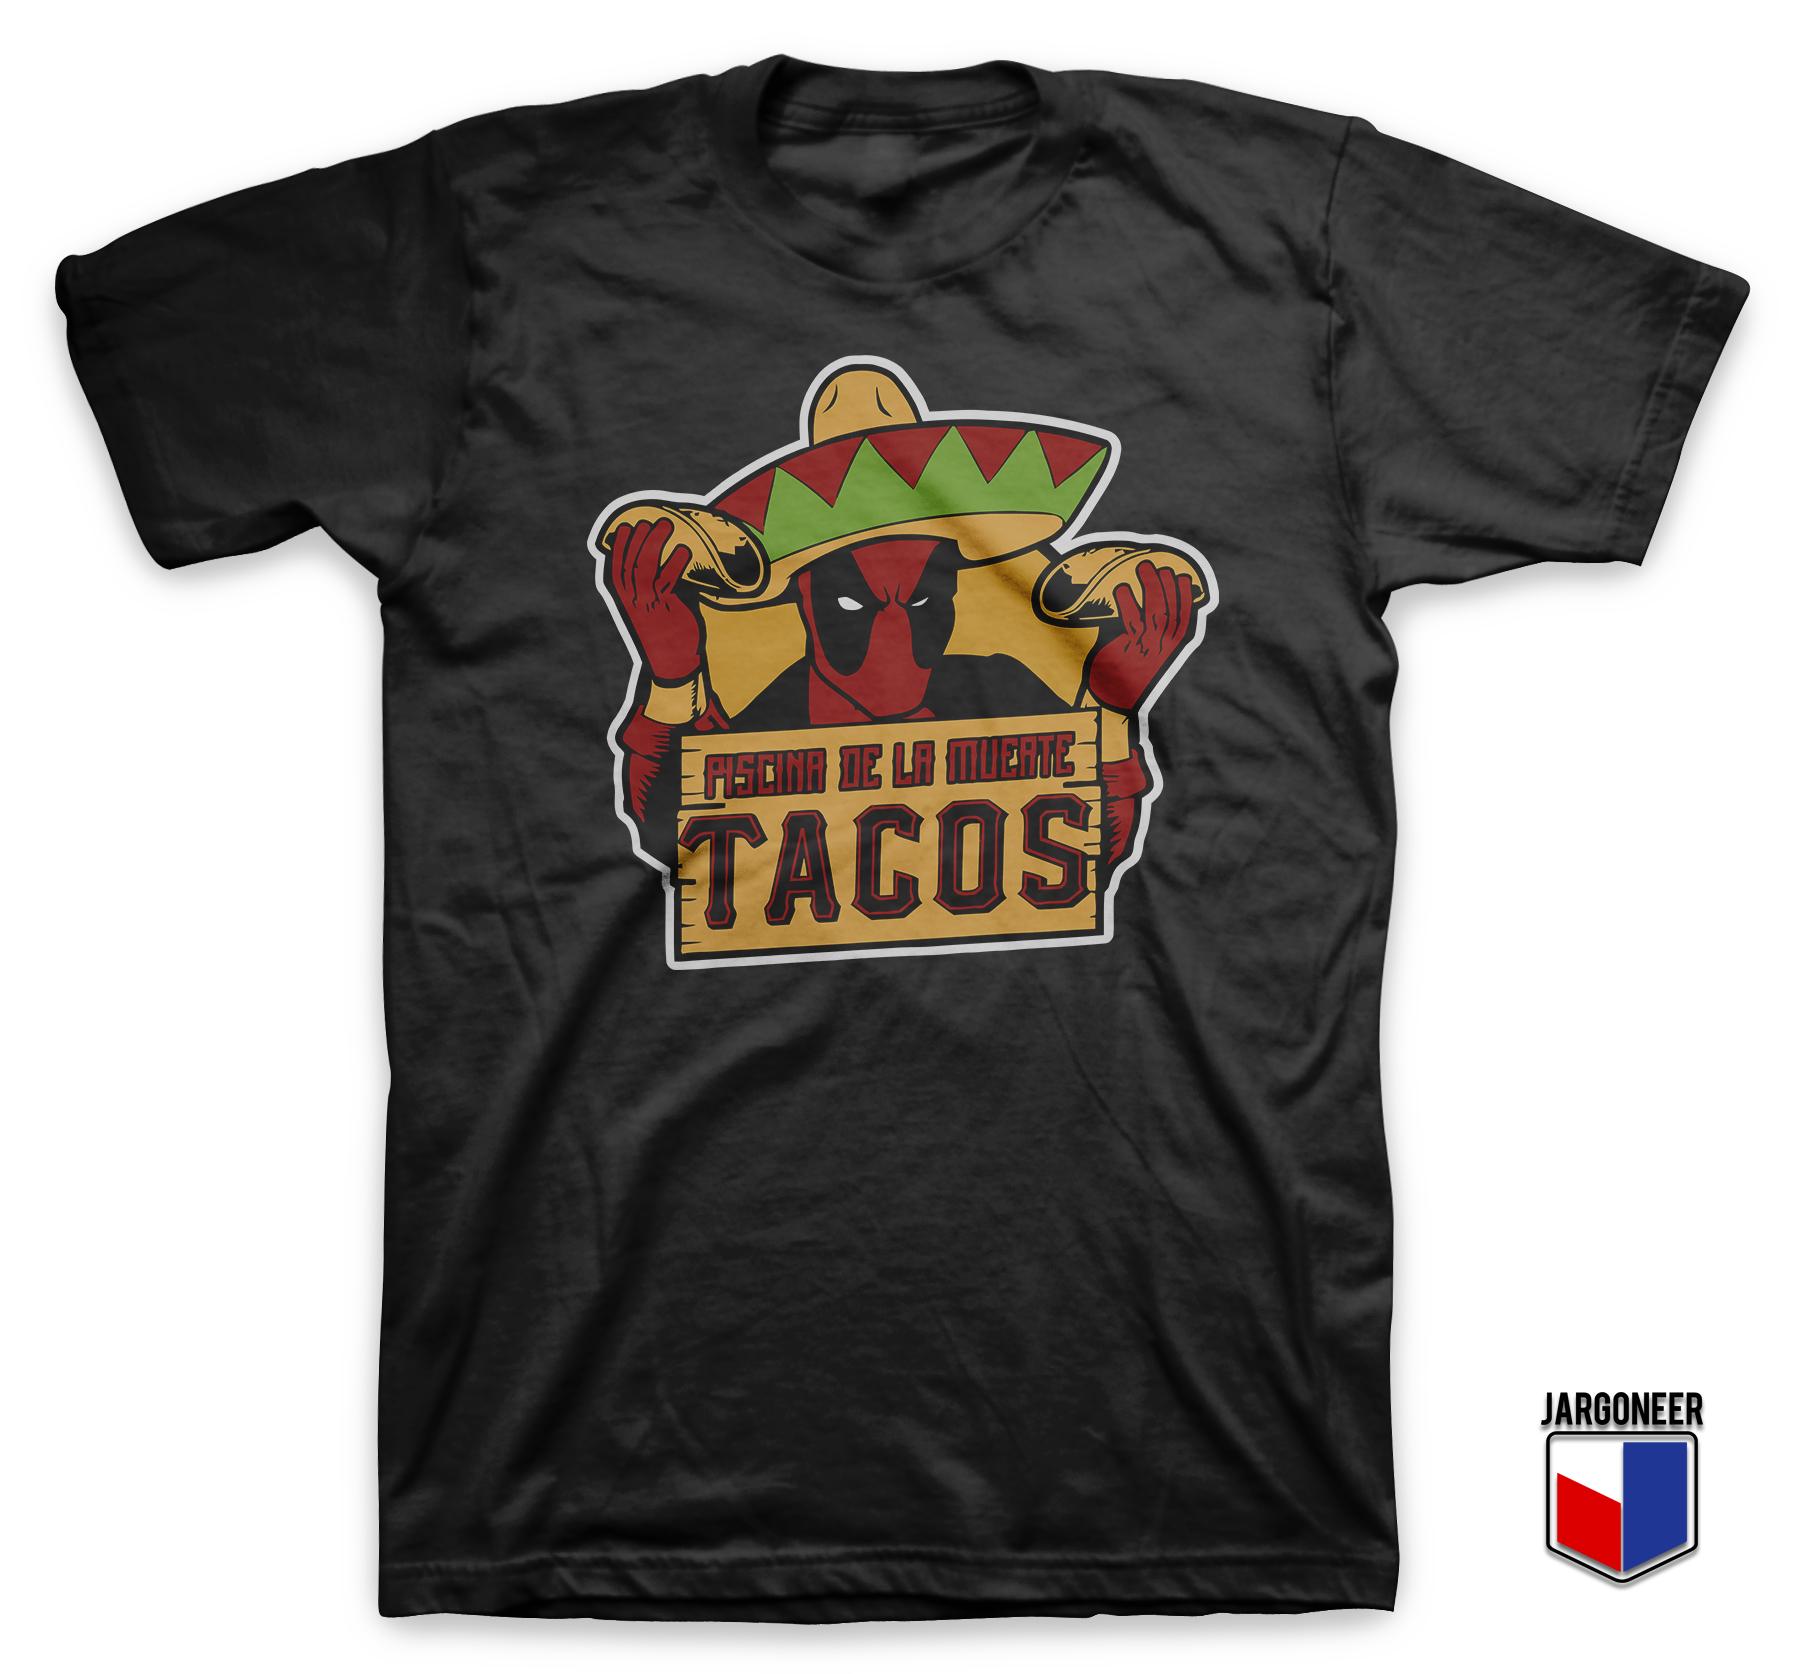 Dead Tacos Black T Shirt - Shop Unique Graphic Cool Shirt Designs